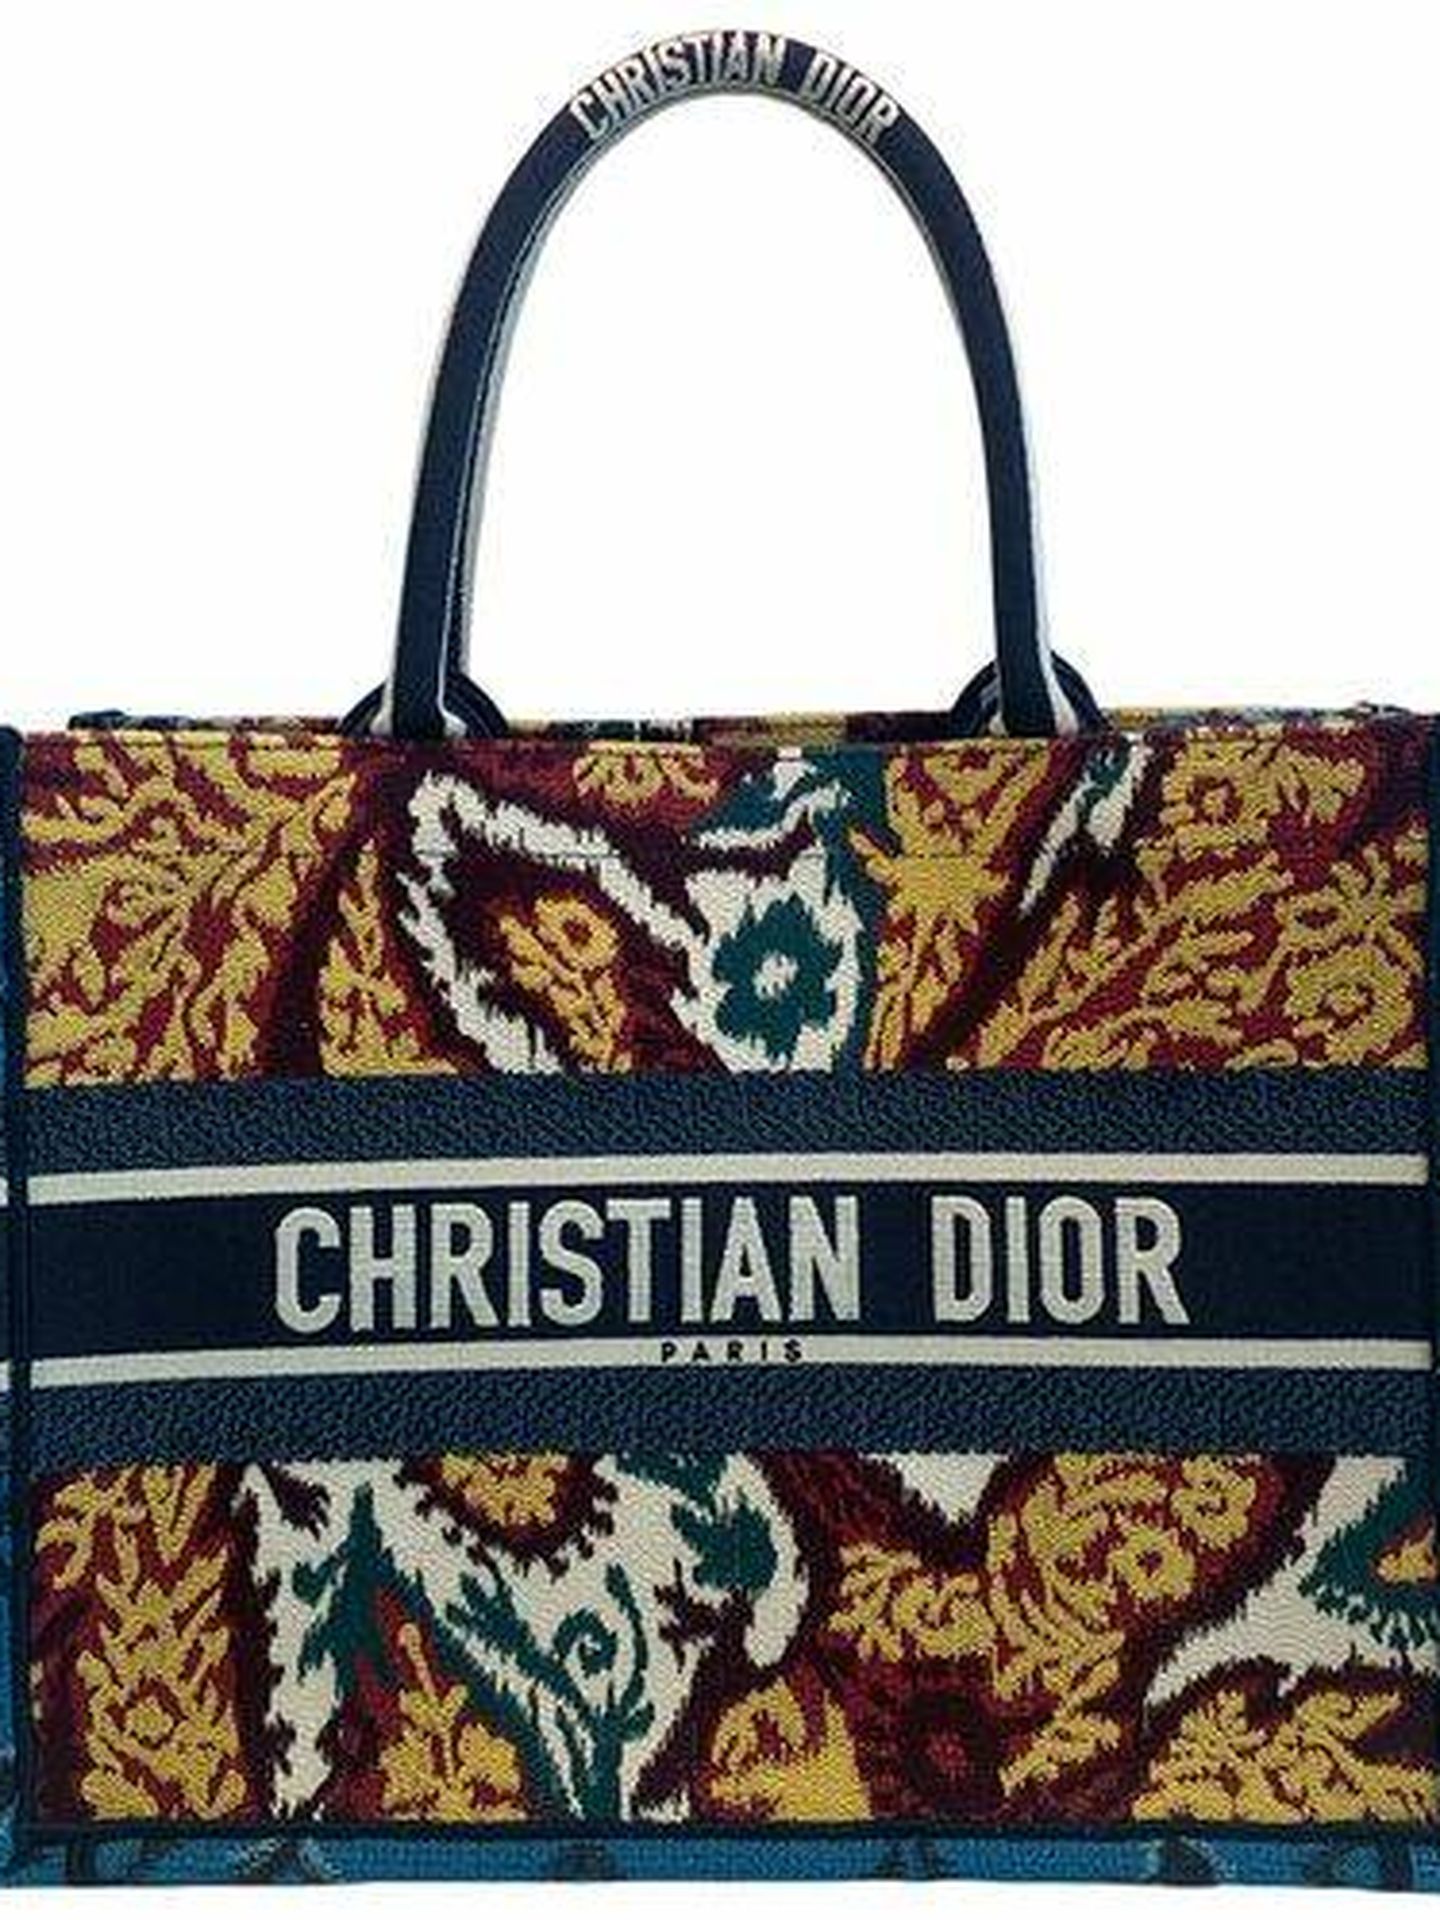  El bolso de Dior.